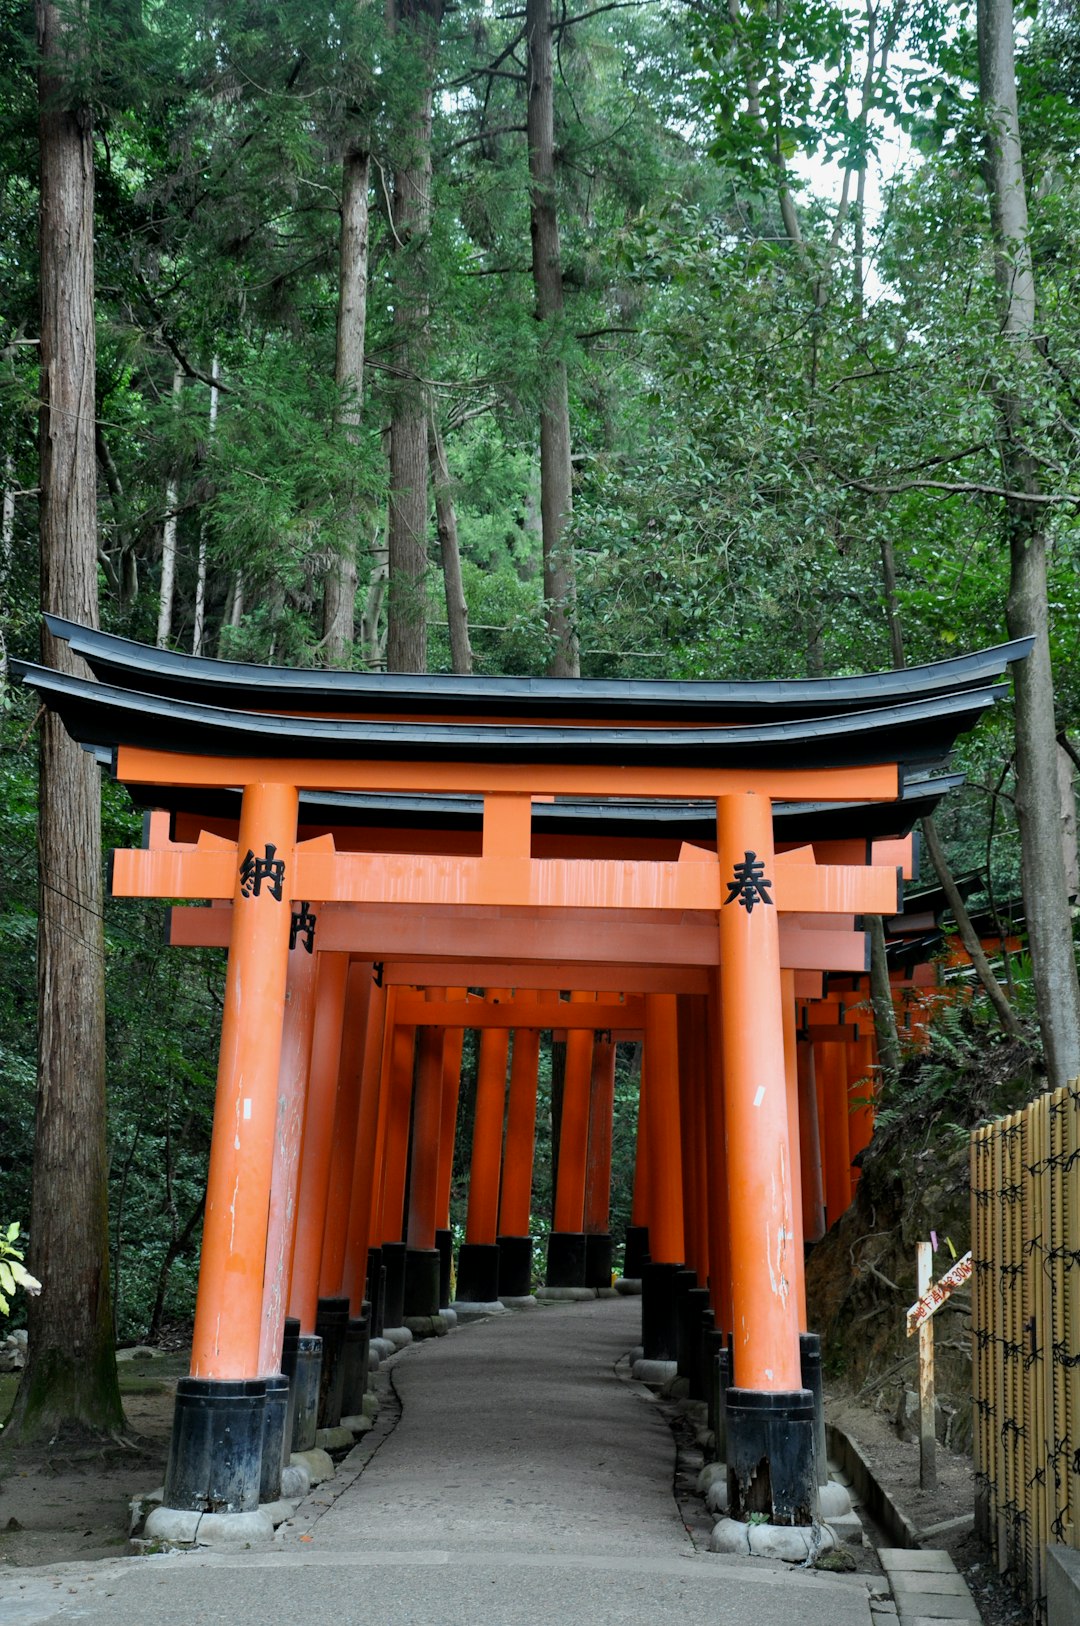 Place of worship photo spot Fushimi Inari Taisha Kyoto